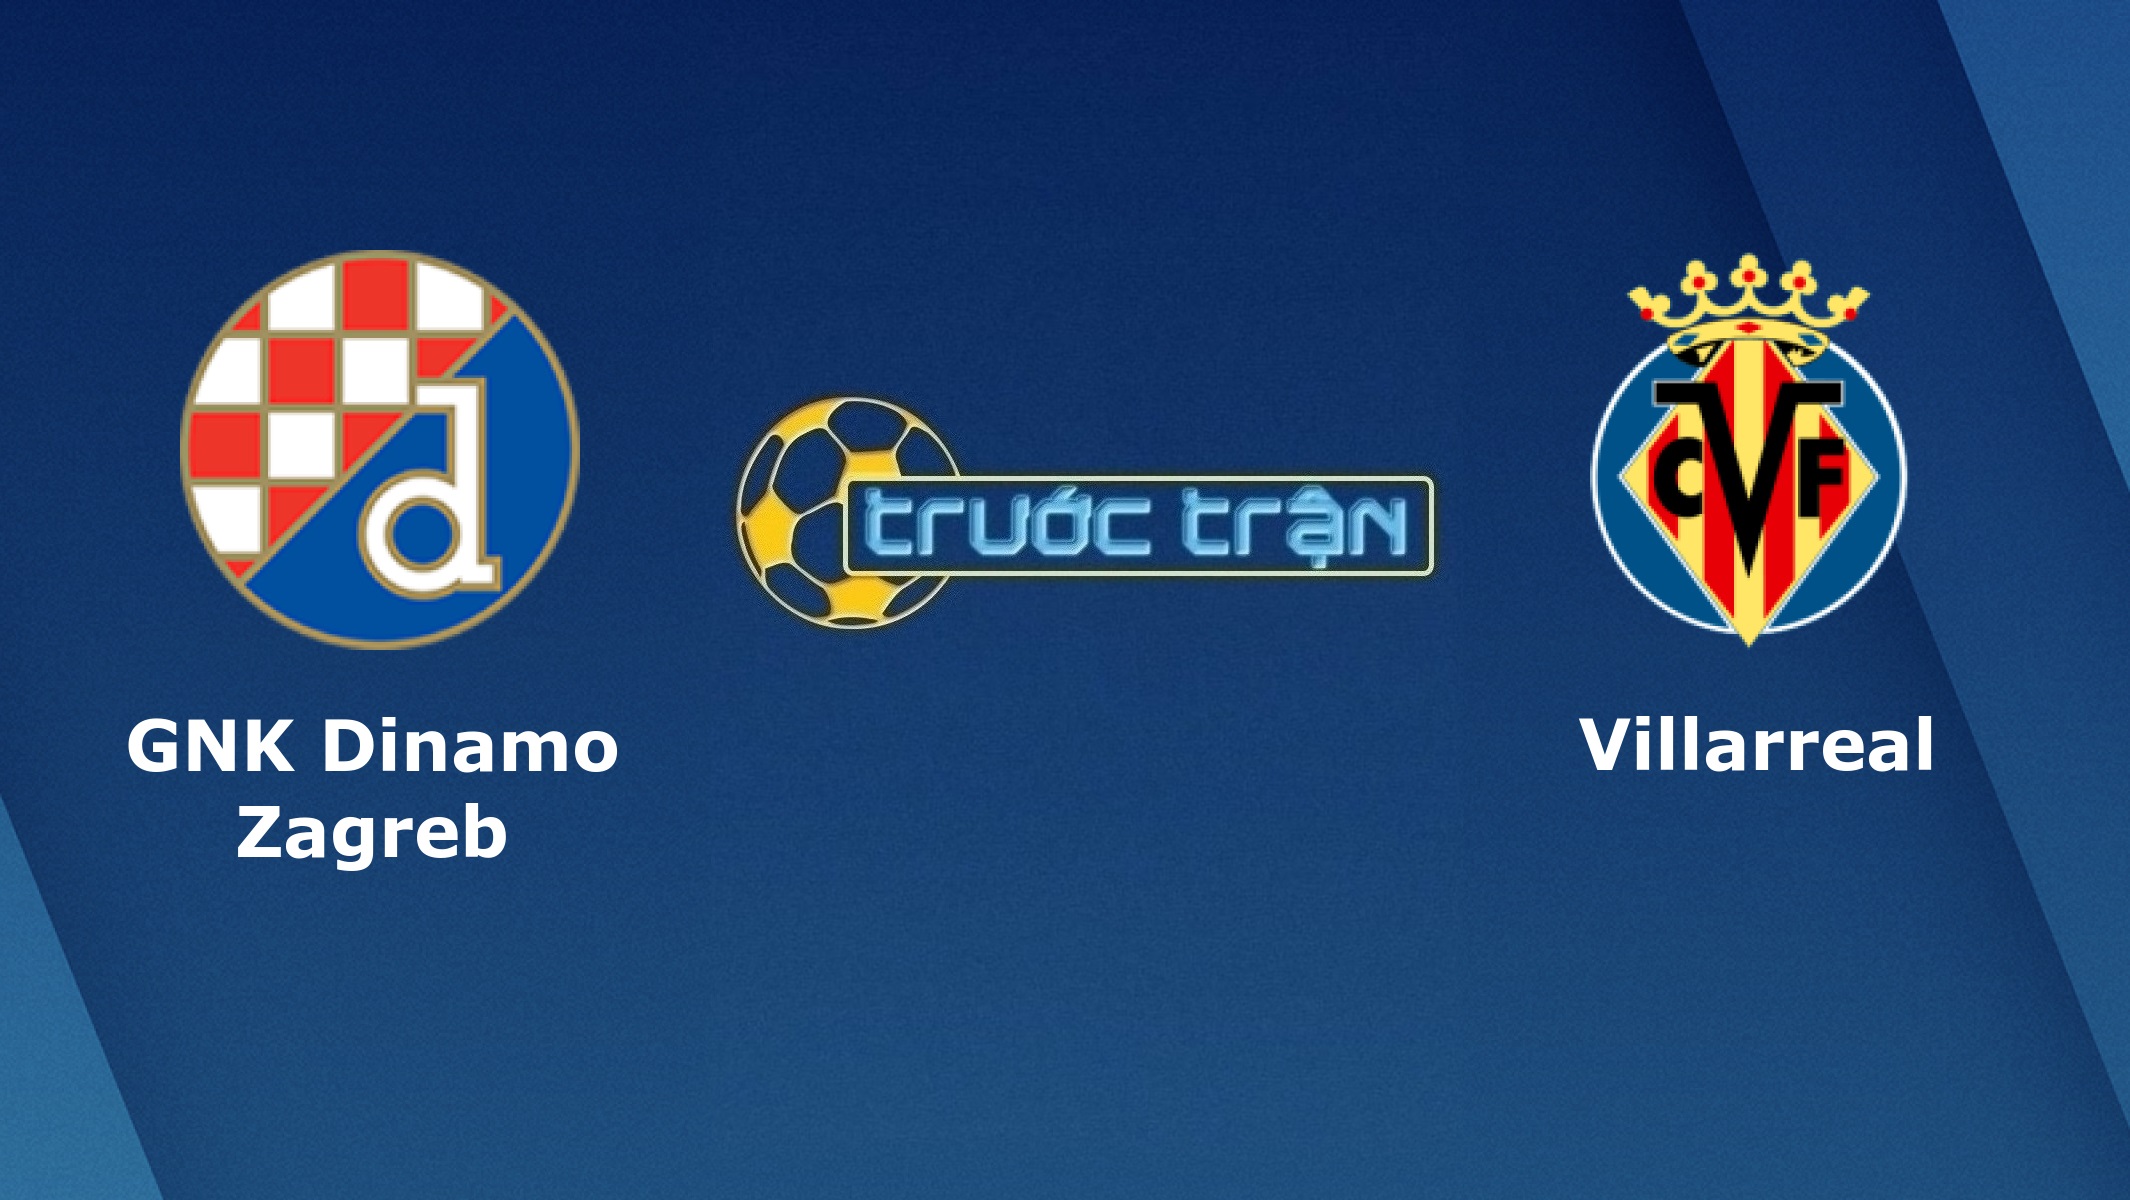 Dinamo Zagreb vs Villarreal – Tip kèo bóng đá hôm nay – 02h00 09/04/2021